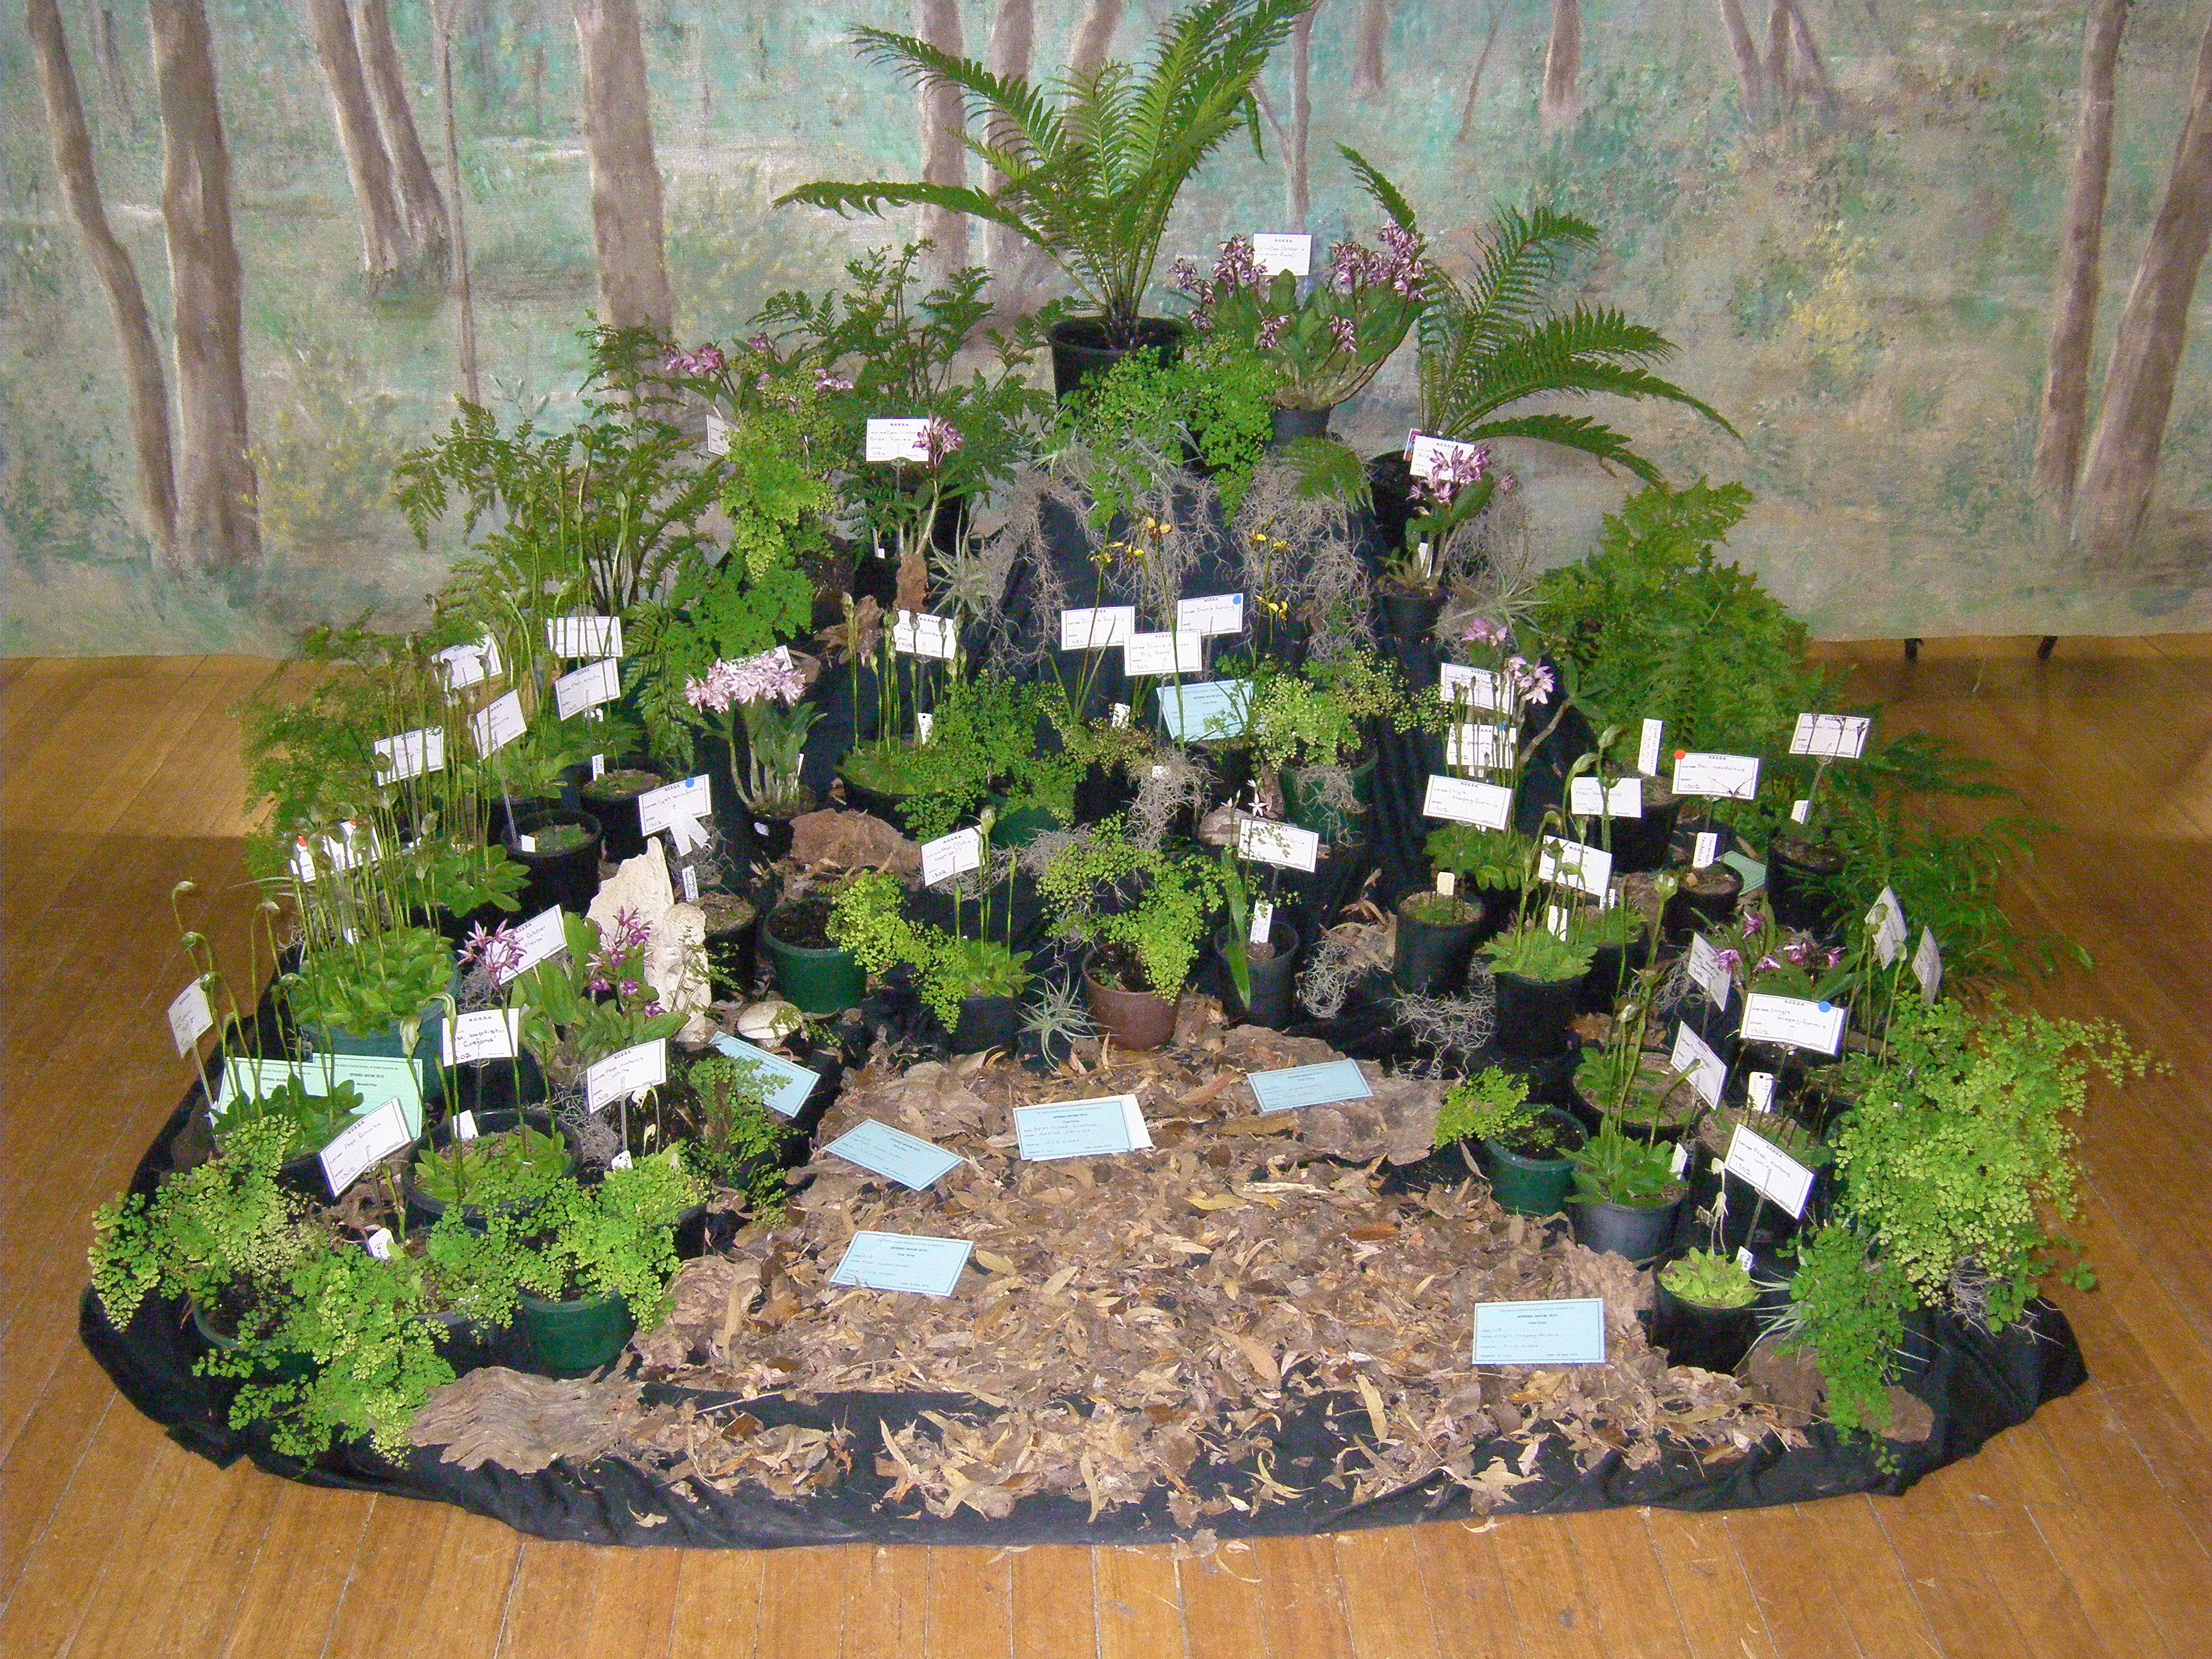 Garden display